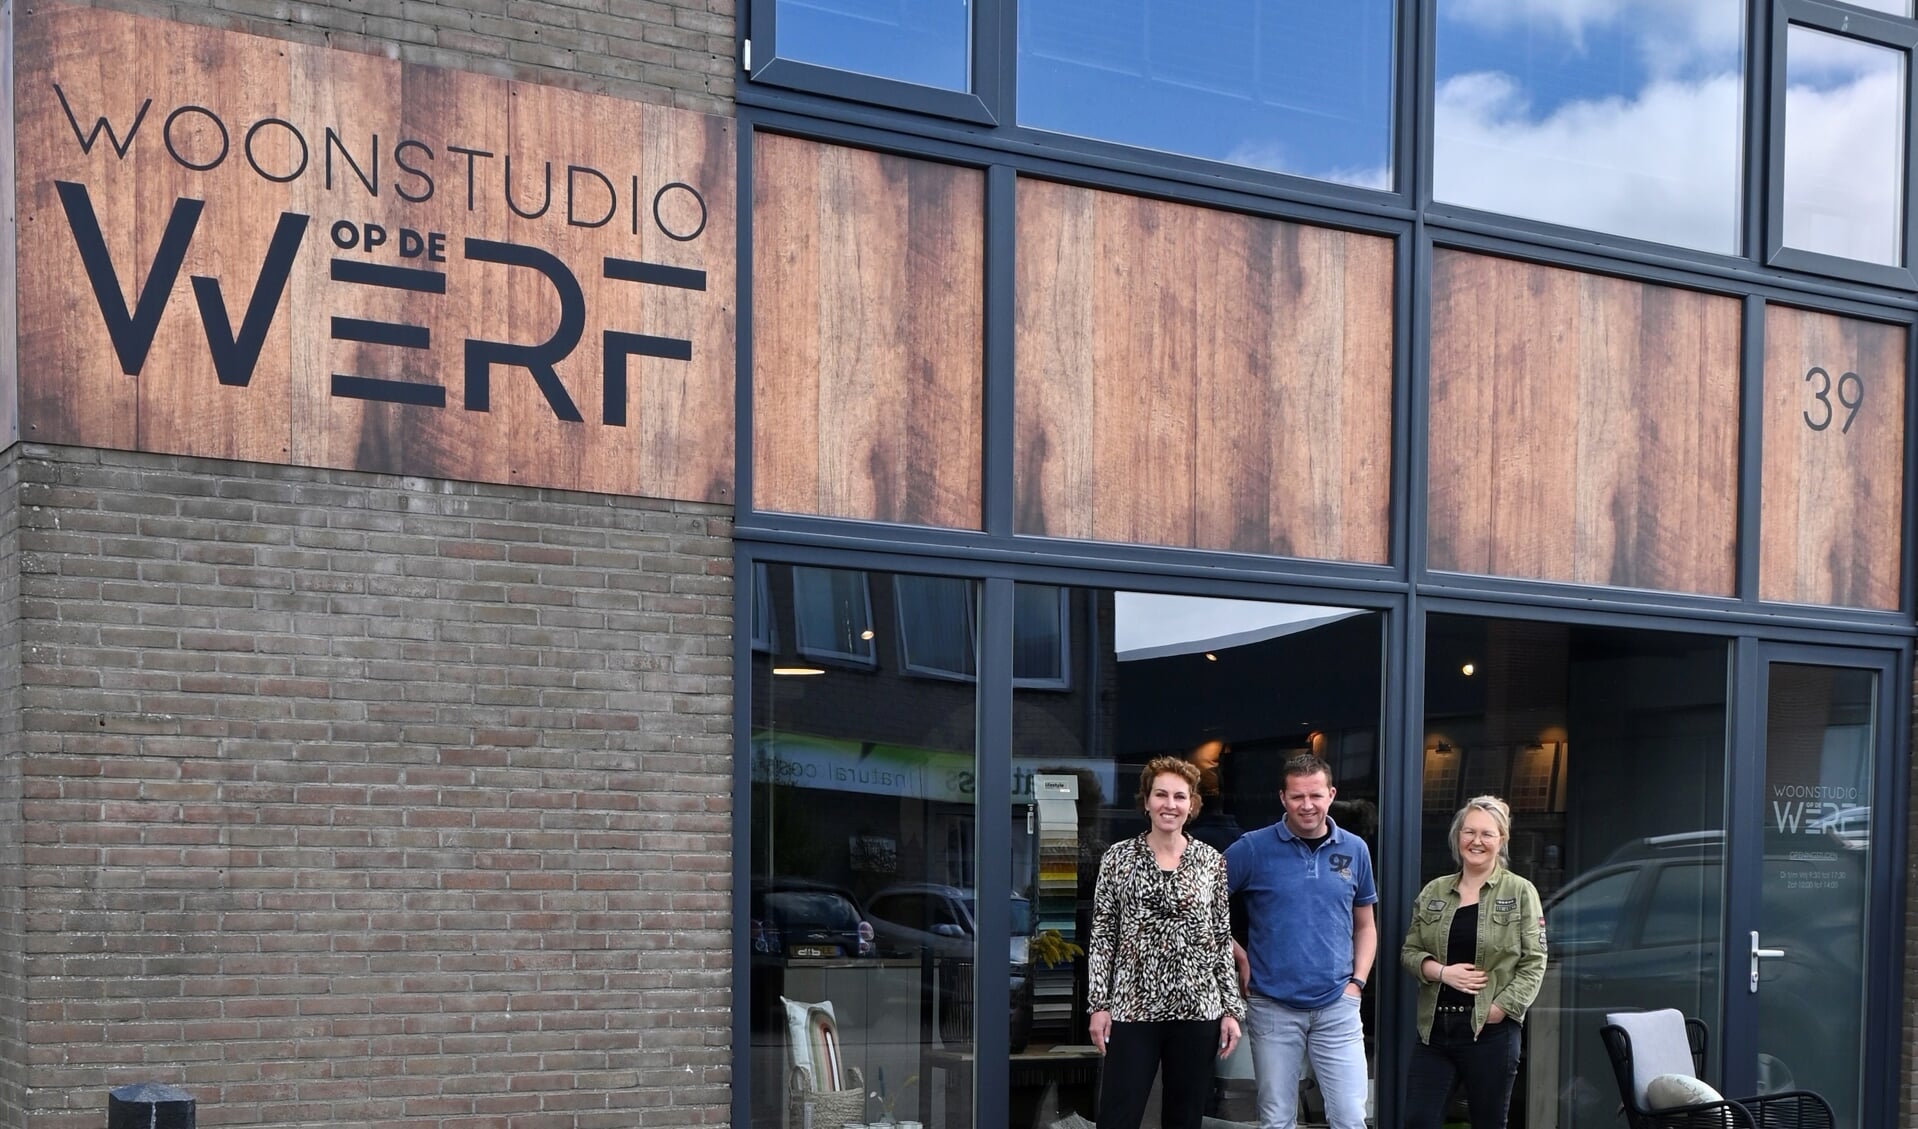 Lekker naar binnen gluren bij ‘Woonstudio op de Werf’ met v.l.n.r. Irene Seuren, Ruud Martens en Ingrid Zonneveld 